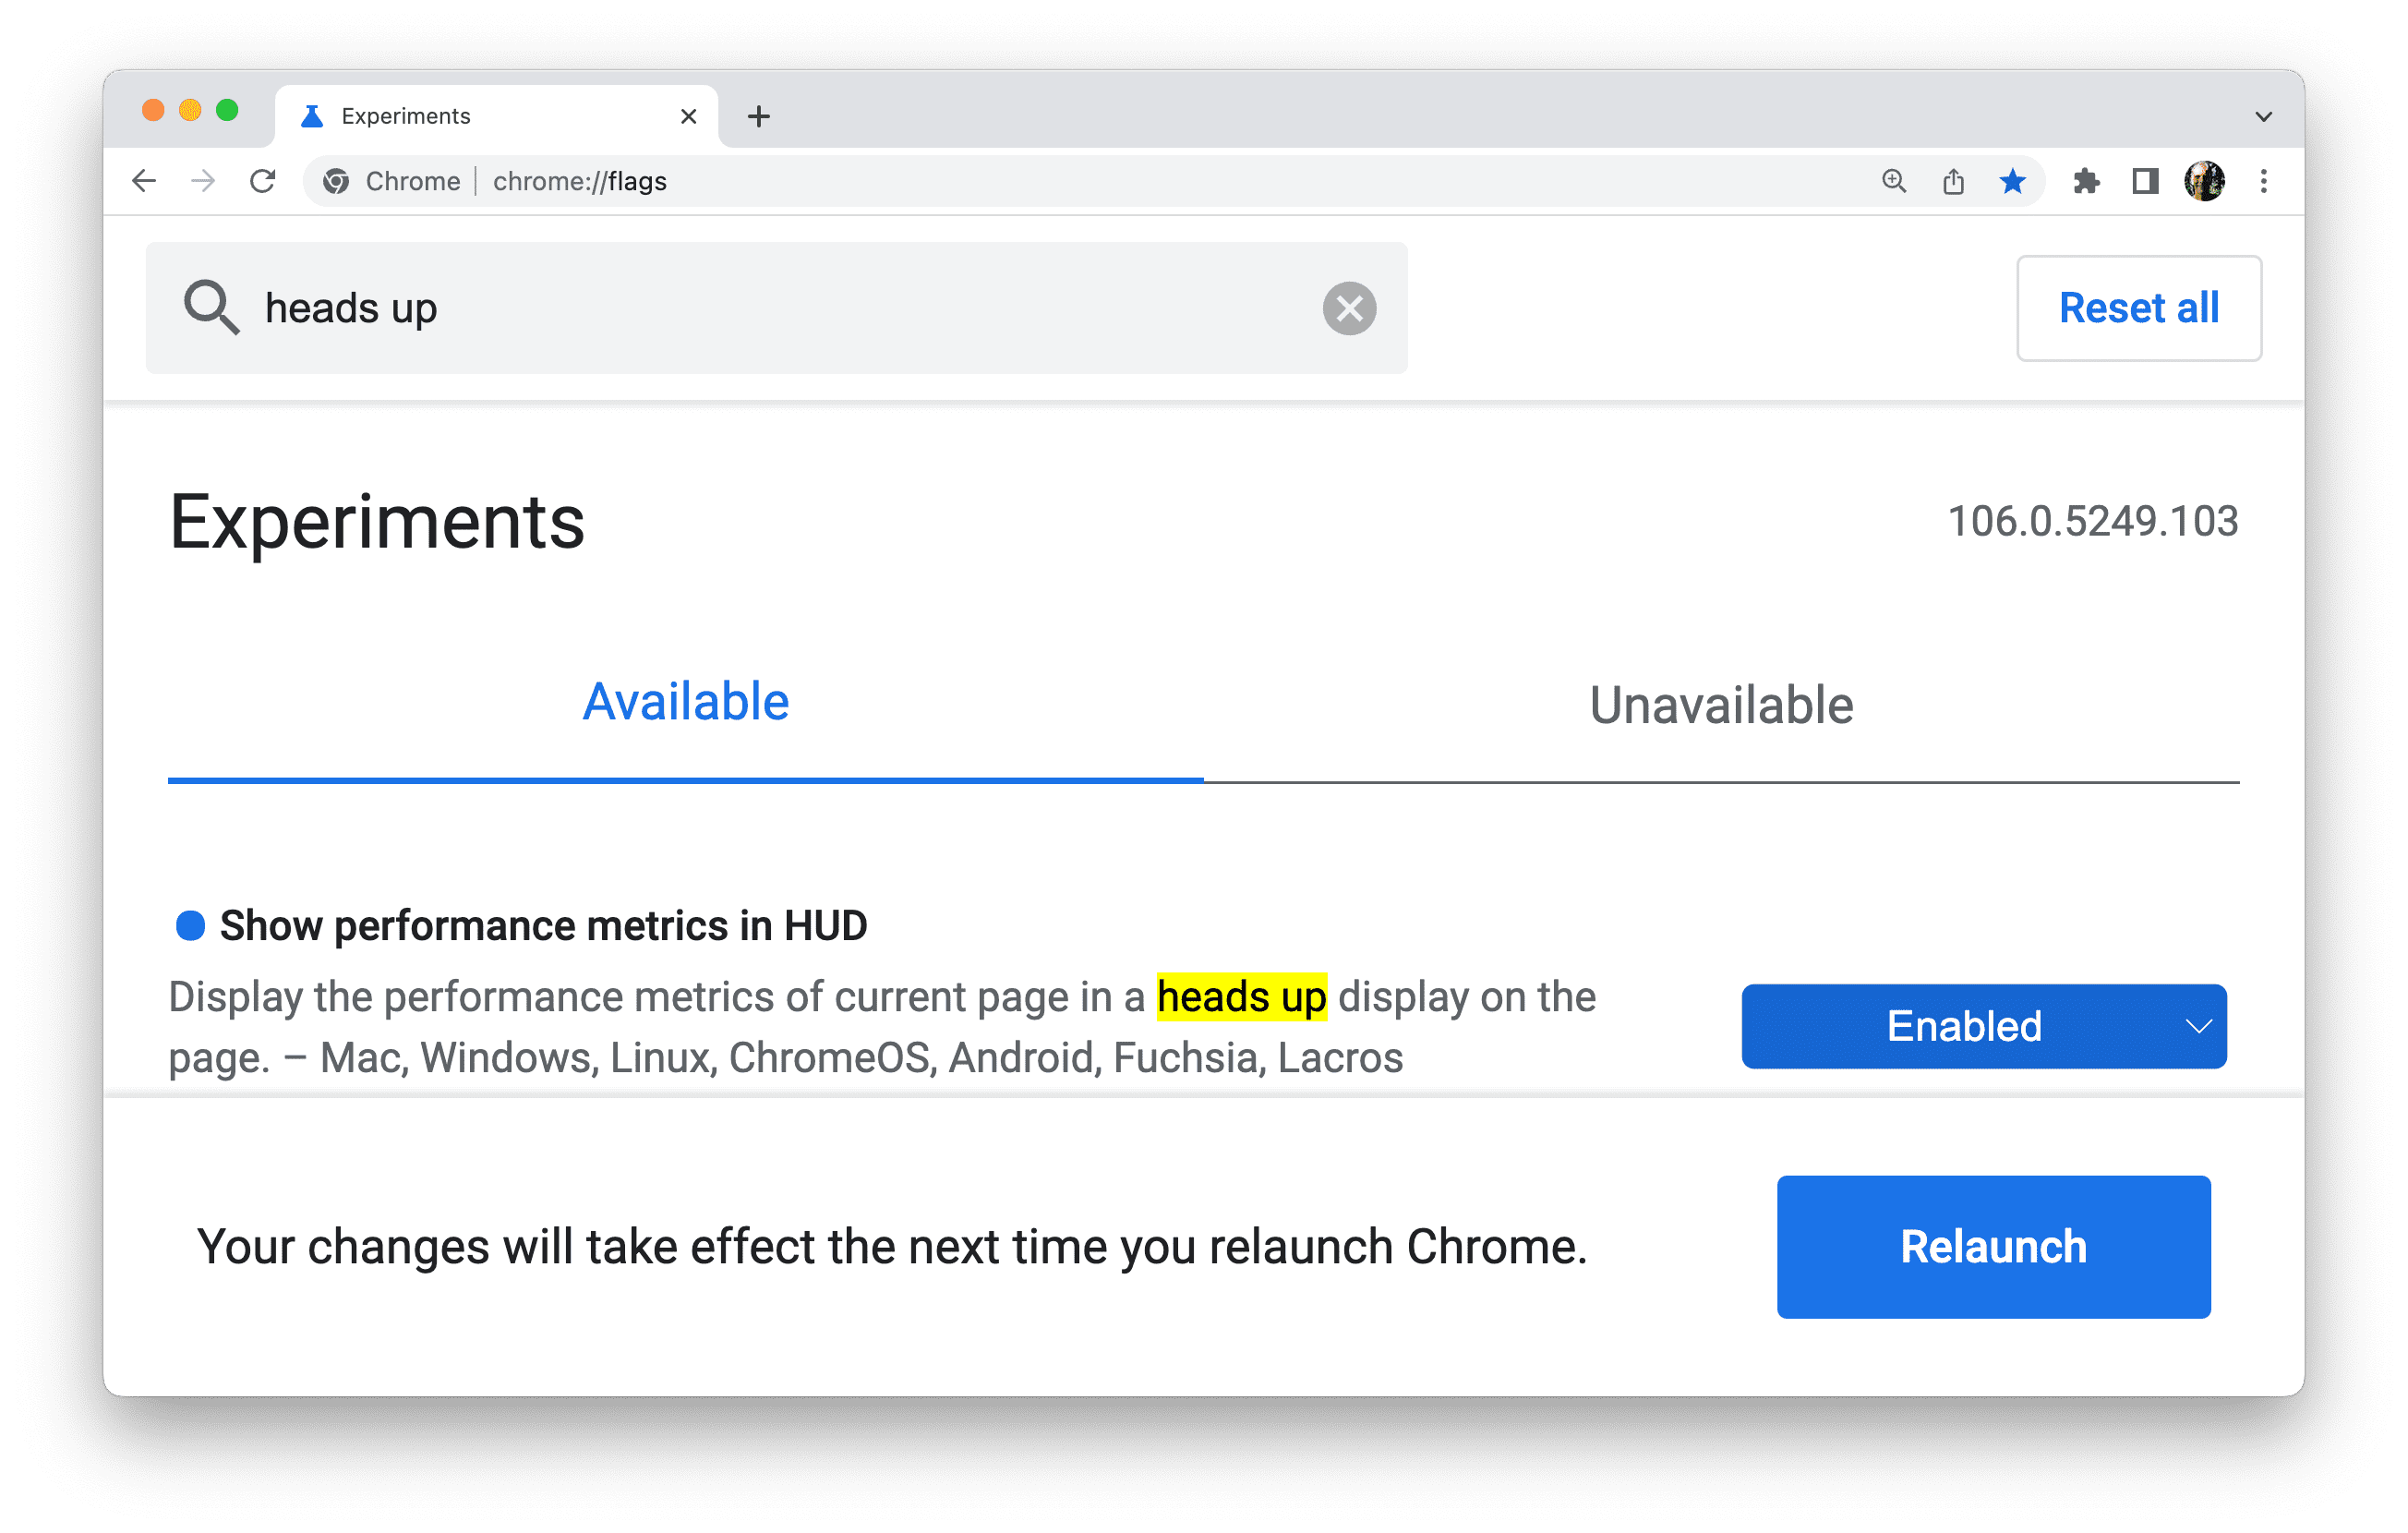 เมื่ออัปเดตแฟล็กแล้ว
Chrome จะแสดงข้อความแจ้งให้คุณเปิดเบราว์เซอร์อีกครั้ง..